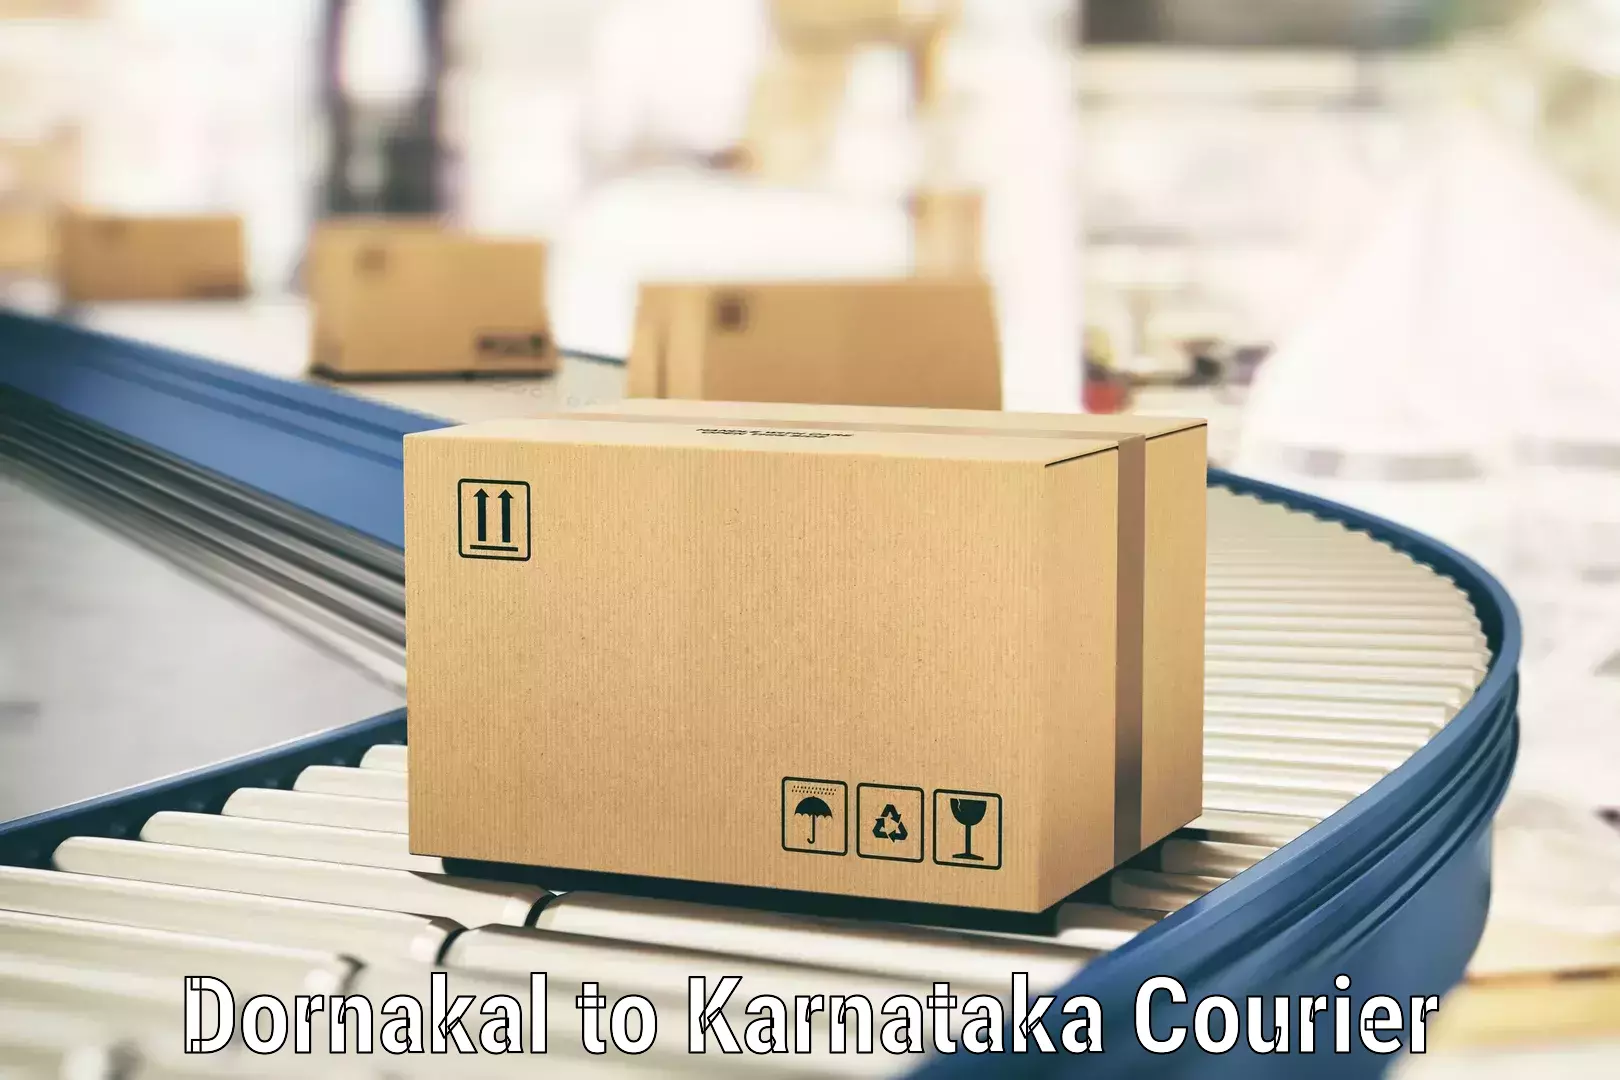 High-capacity parcel service Dornakal to Kundapura